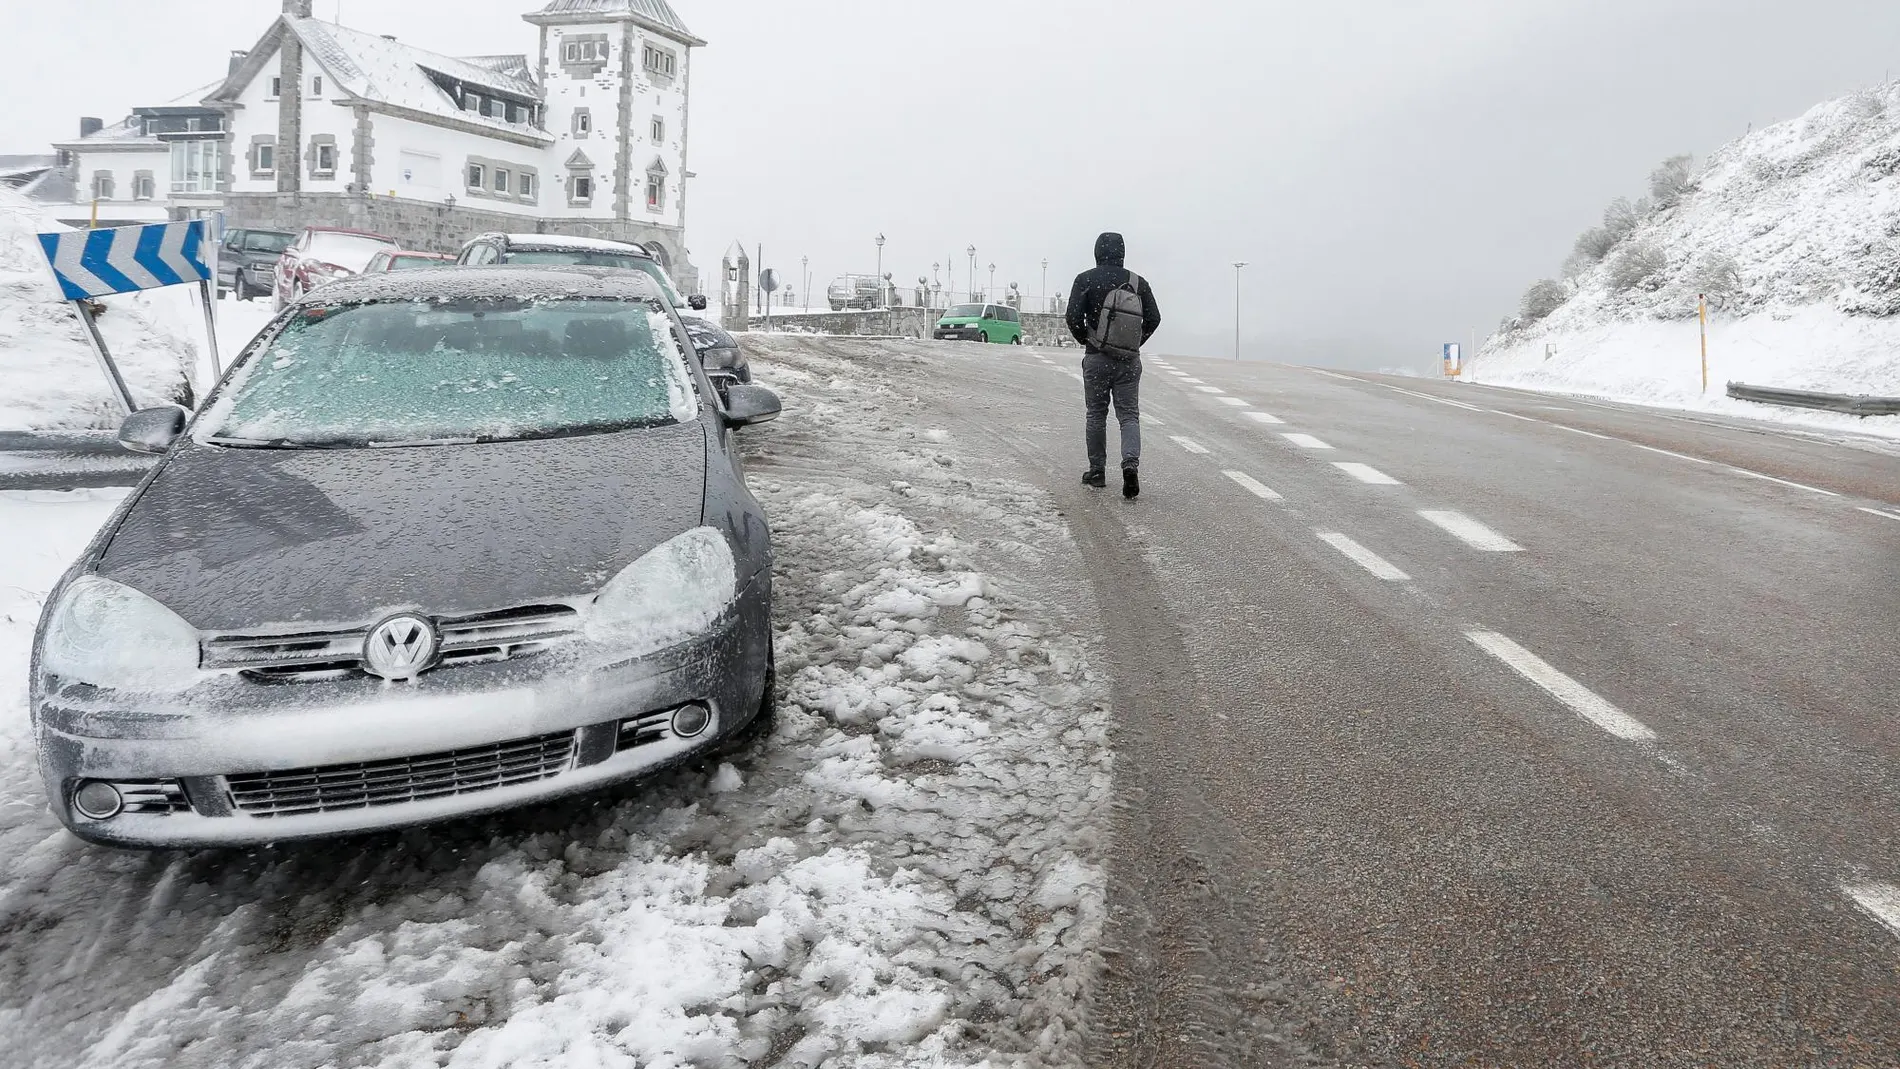 Las nevadas provocaron dificultades en las carreteras de la provincia de León